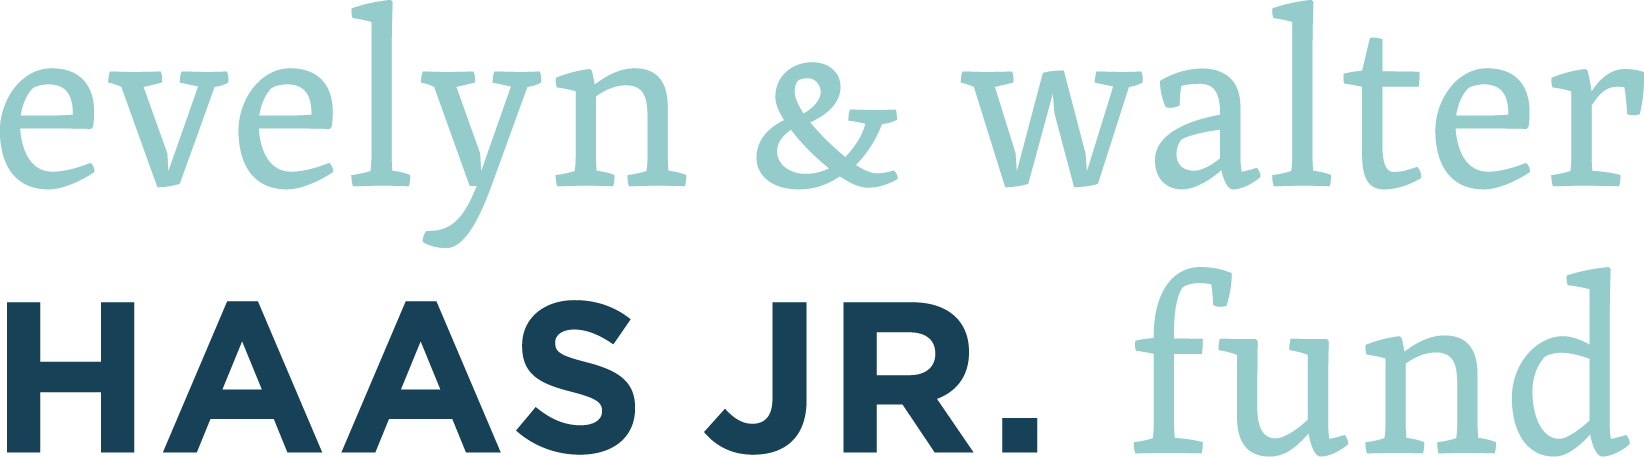 Evelyn & Walter Haas, Jr. Fund Logo